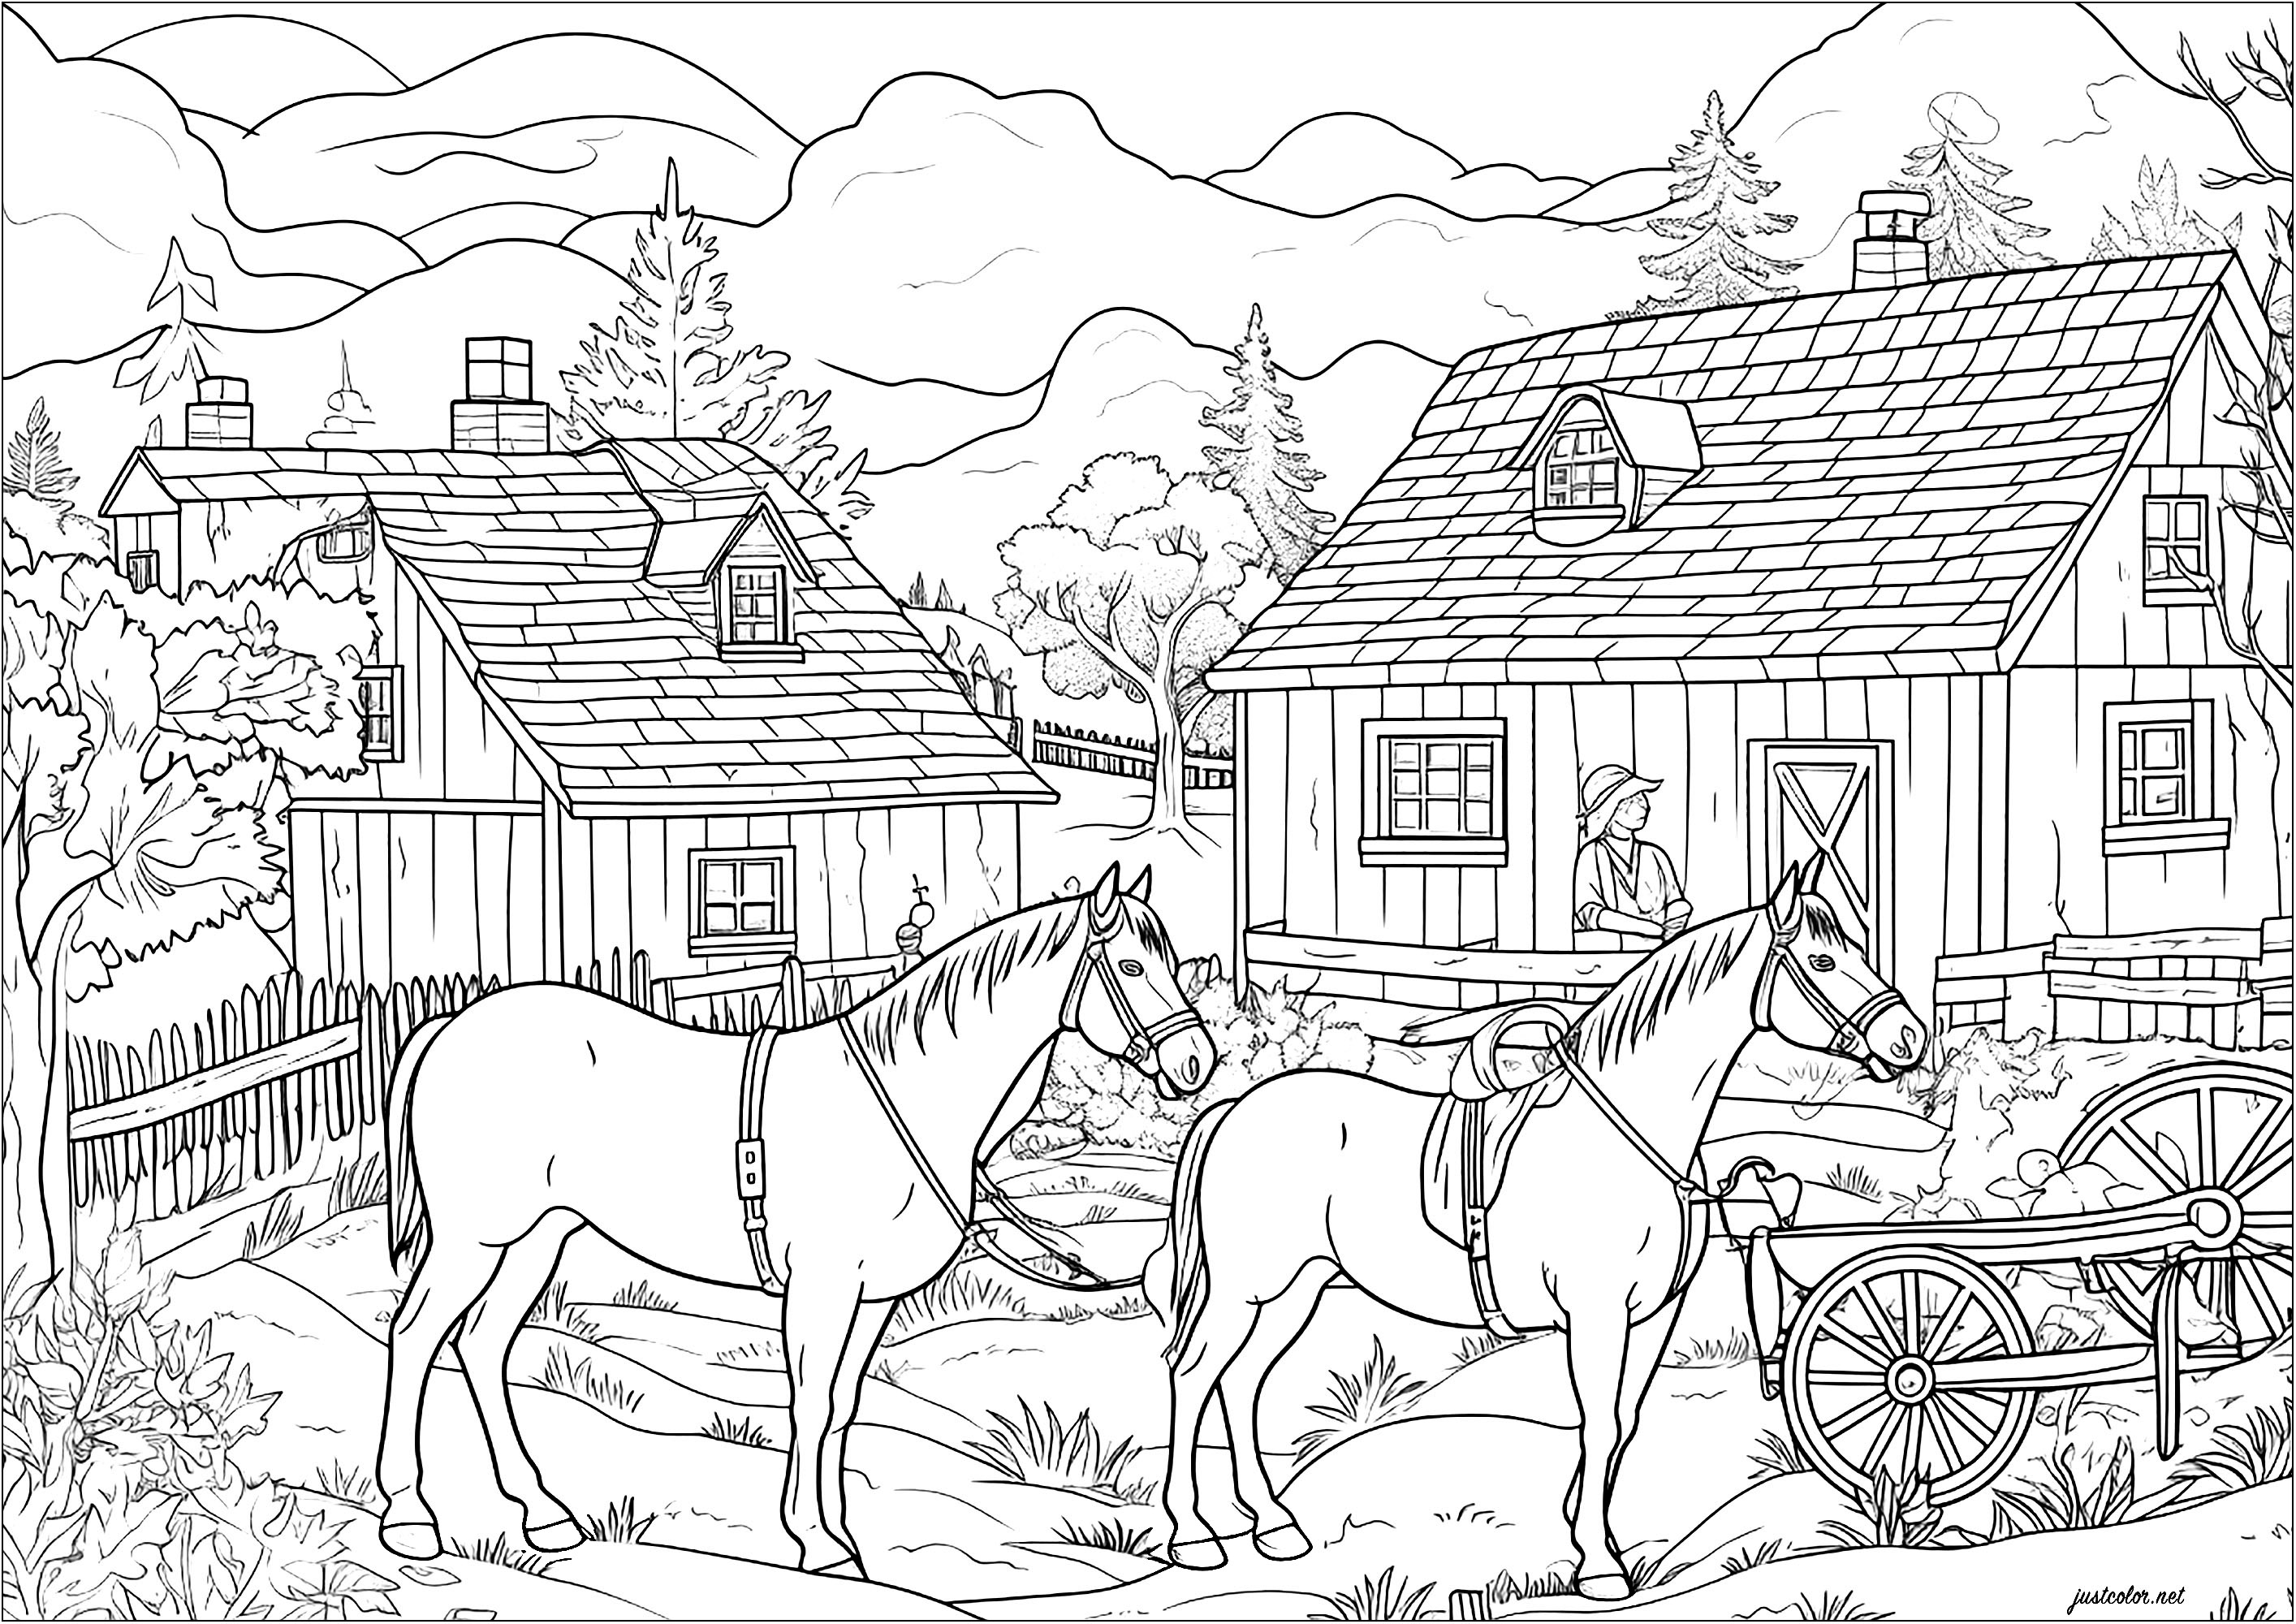 Dois cavalos numa quinta. Uma página para colorir cheia de pormenores